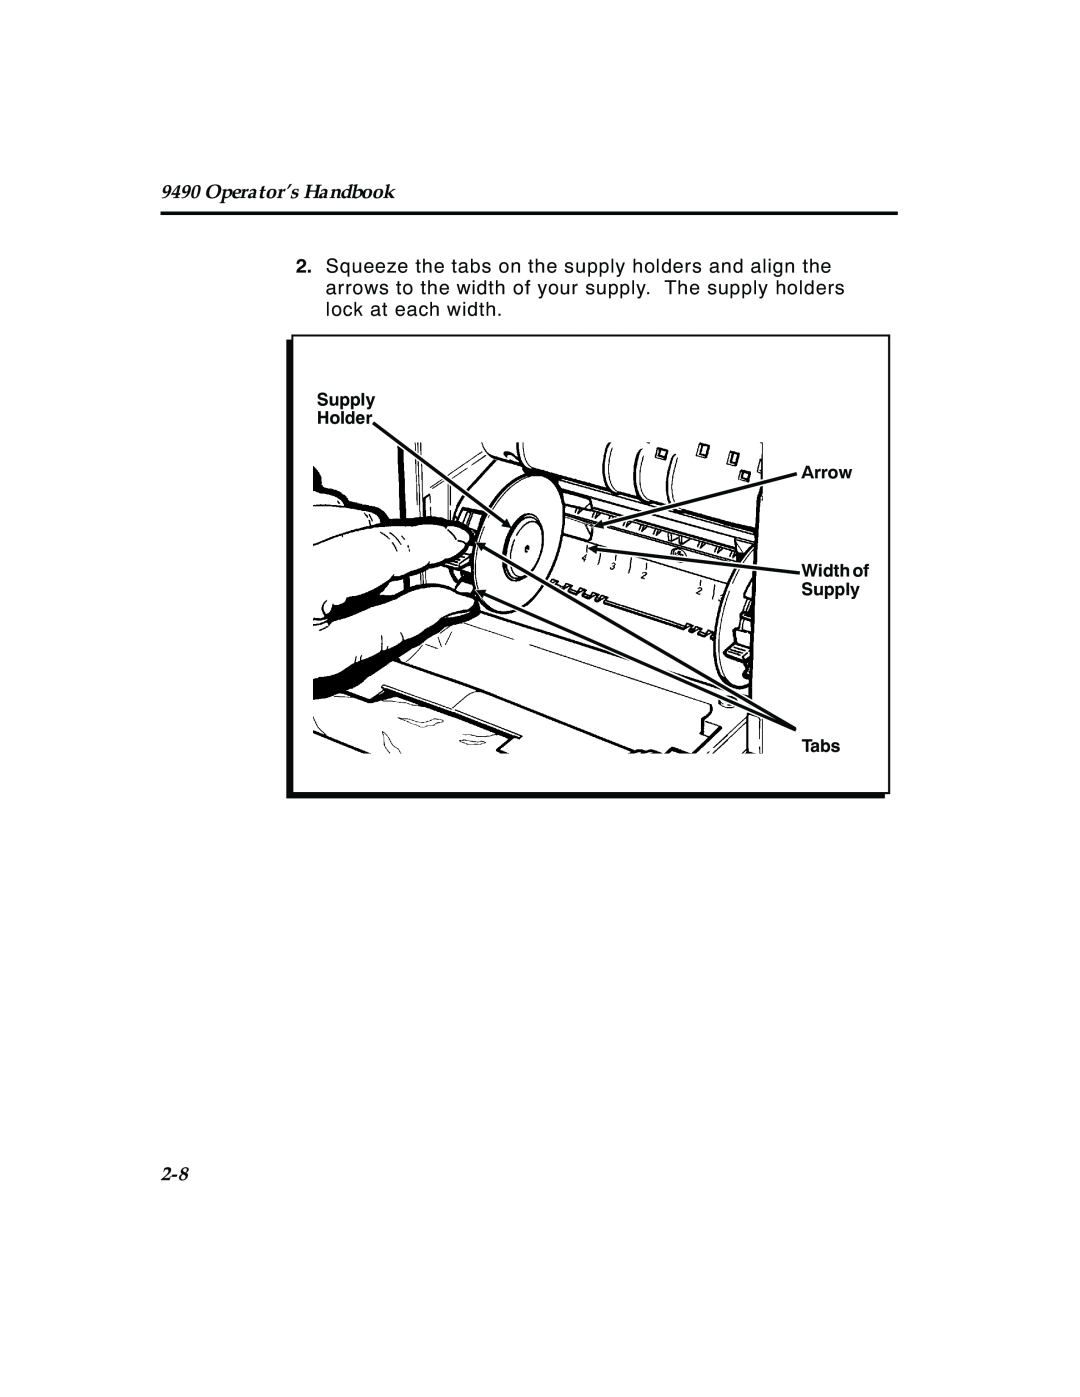 Paxar manual Operator’s Handbook, Supply Holder Arrow Width of Supply Tabs, TC9490OH Rev. C 3/97 